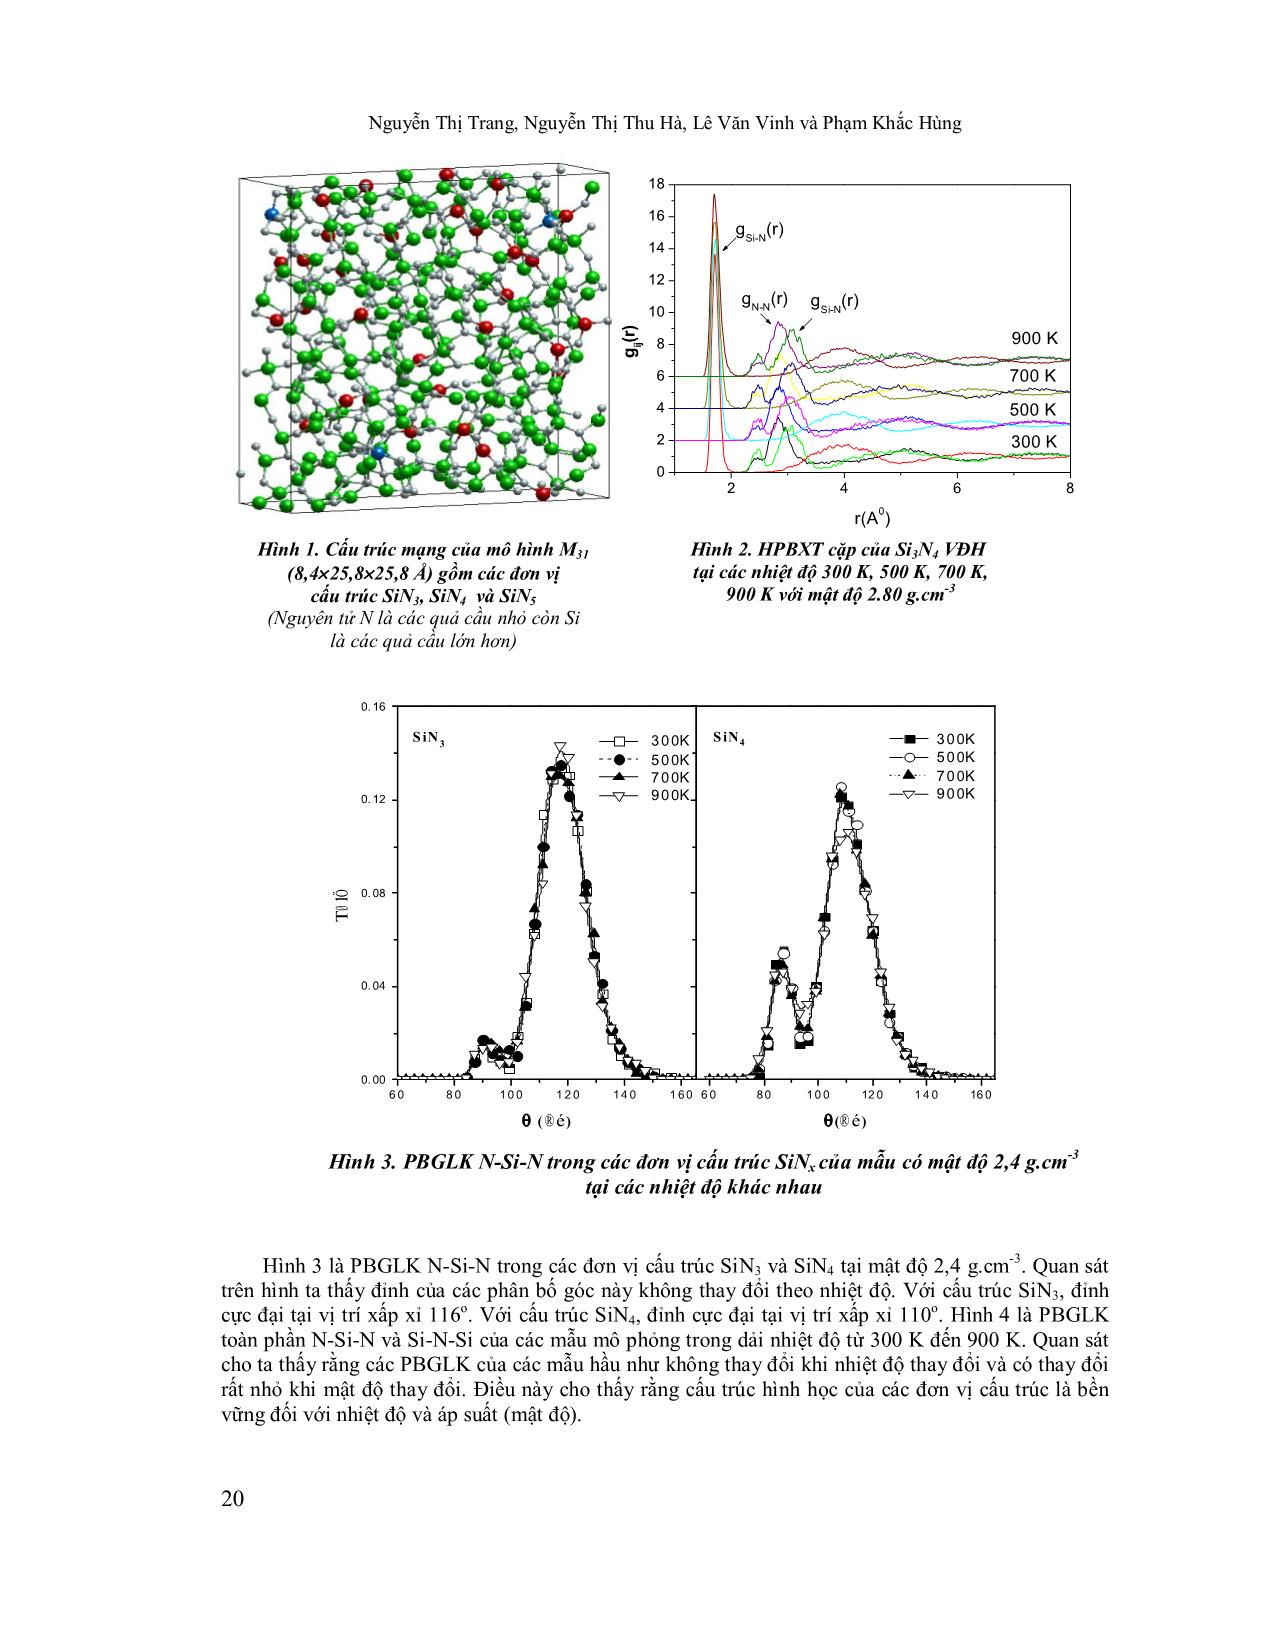 Nghiên cứu ảnh hưởng của nhiệt độ ủ lên cấu trúc và cơ tính của vật liệu N₃O₄ bằng phương pháp mô phỏng trang 4